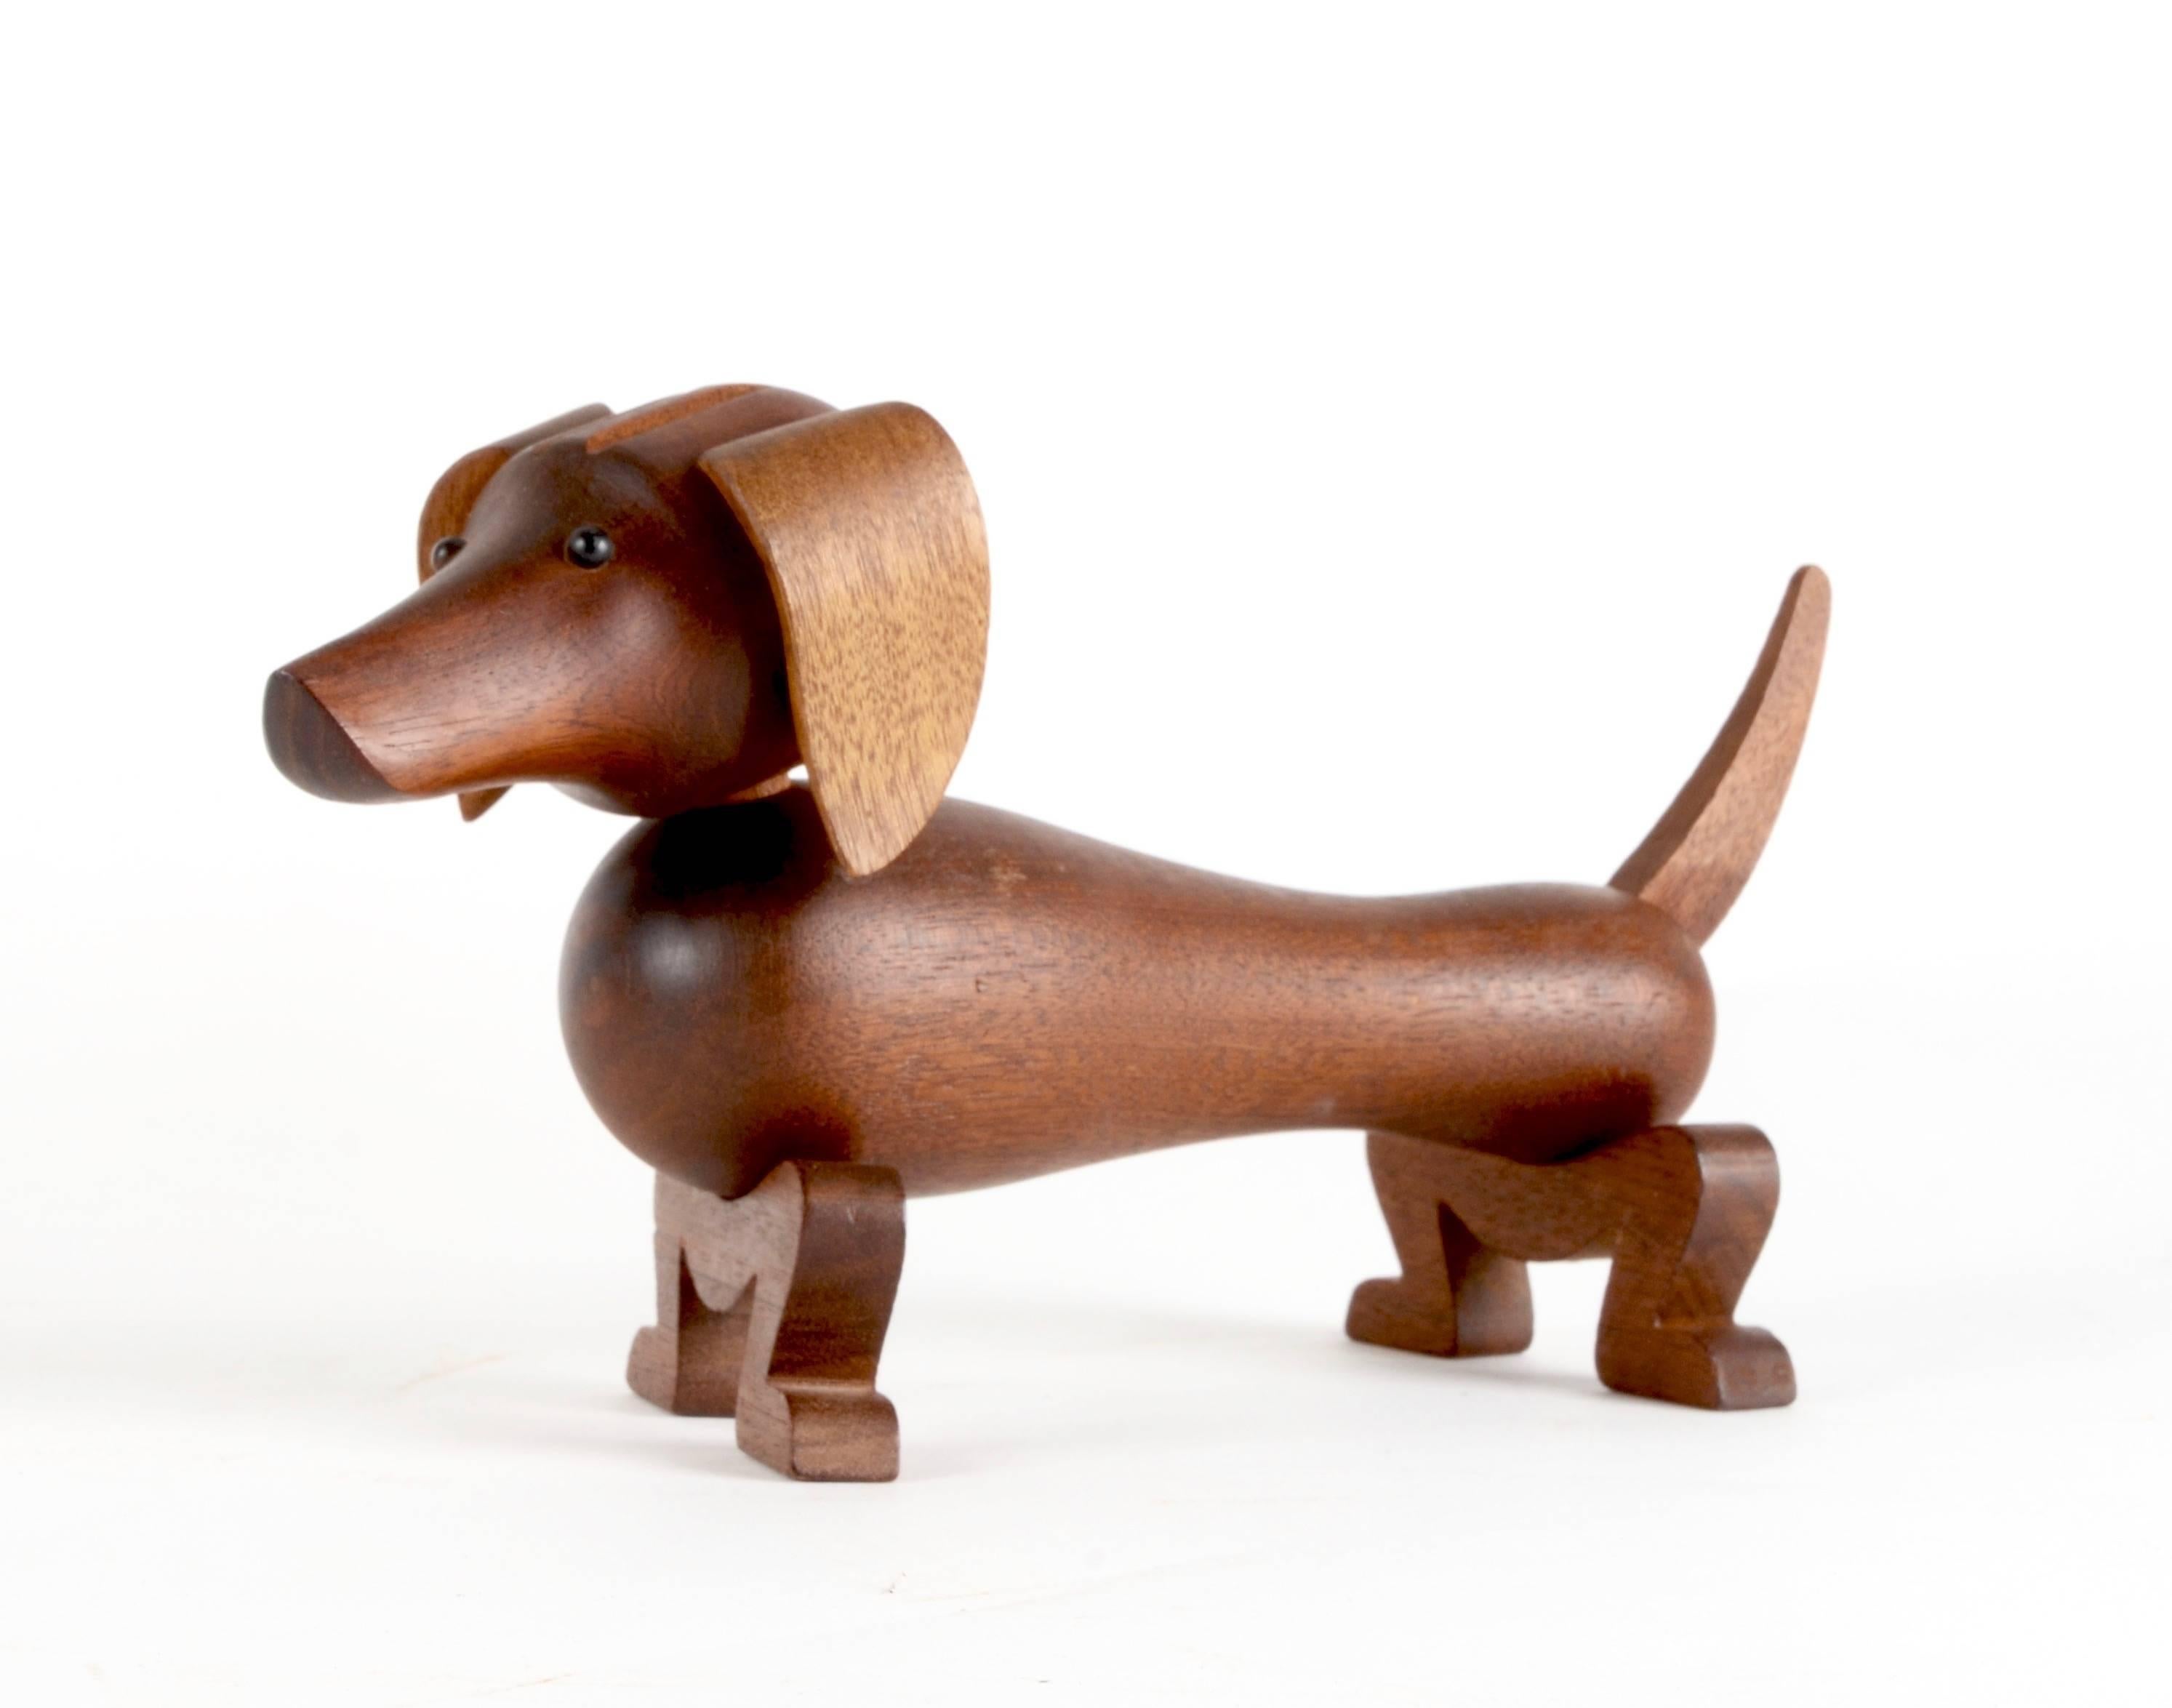 Toy dog, Dachshund / Gravhunden Pind in mahogany, designed by Kay Bojesen in 1934. 

